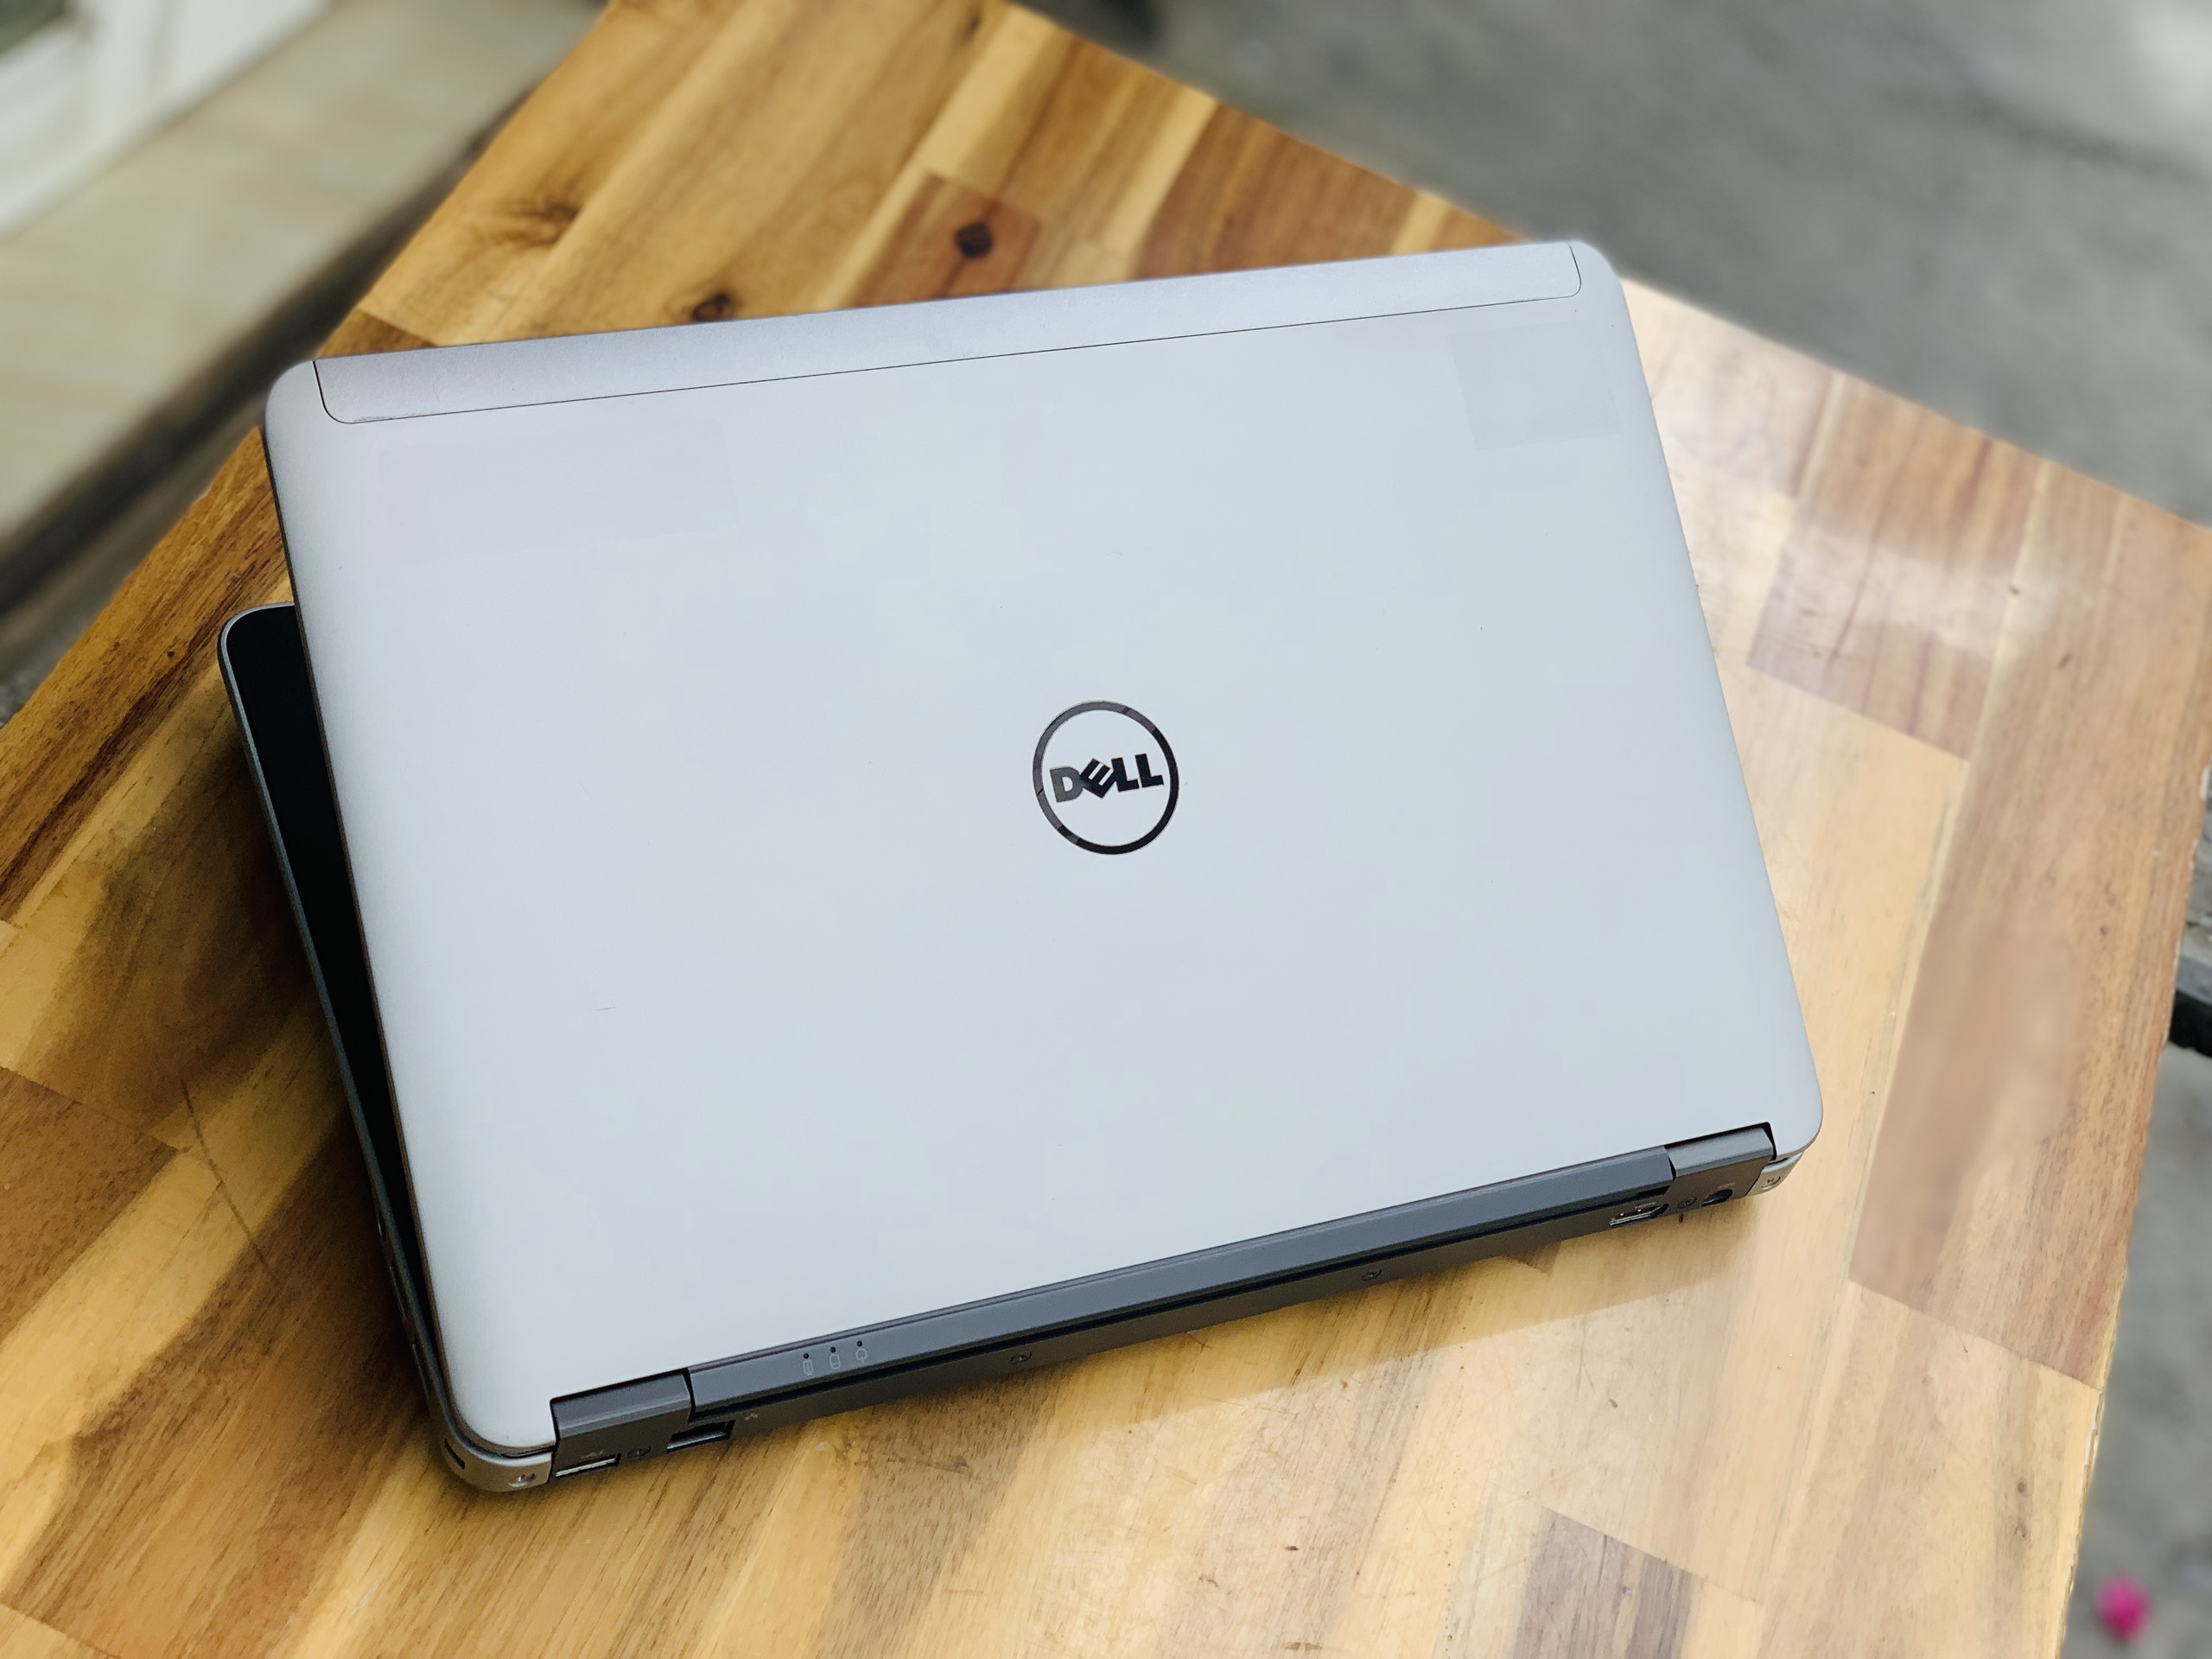 Laptop Dell Latitude E6440, i7 4600M 8G SSD256 Vga 2G Full HD Đẹp Keng zin 100% Giá rẻ4